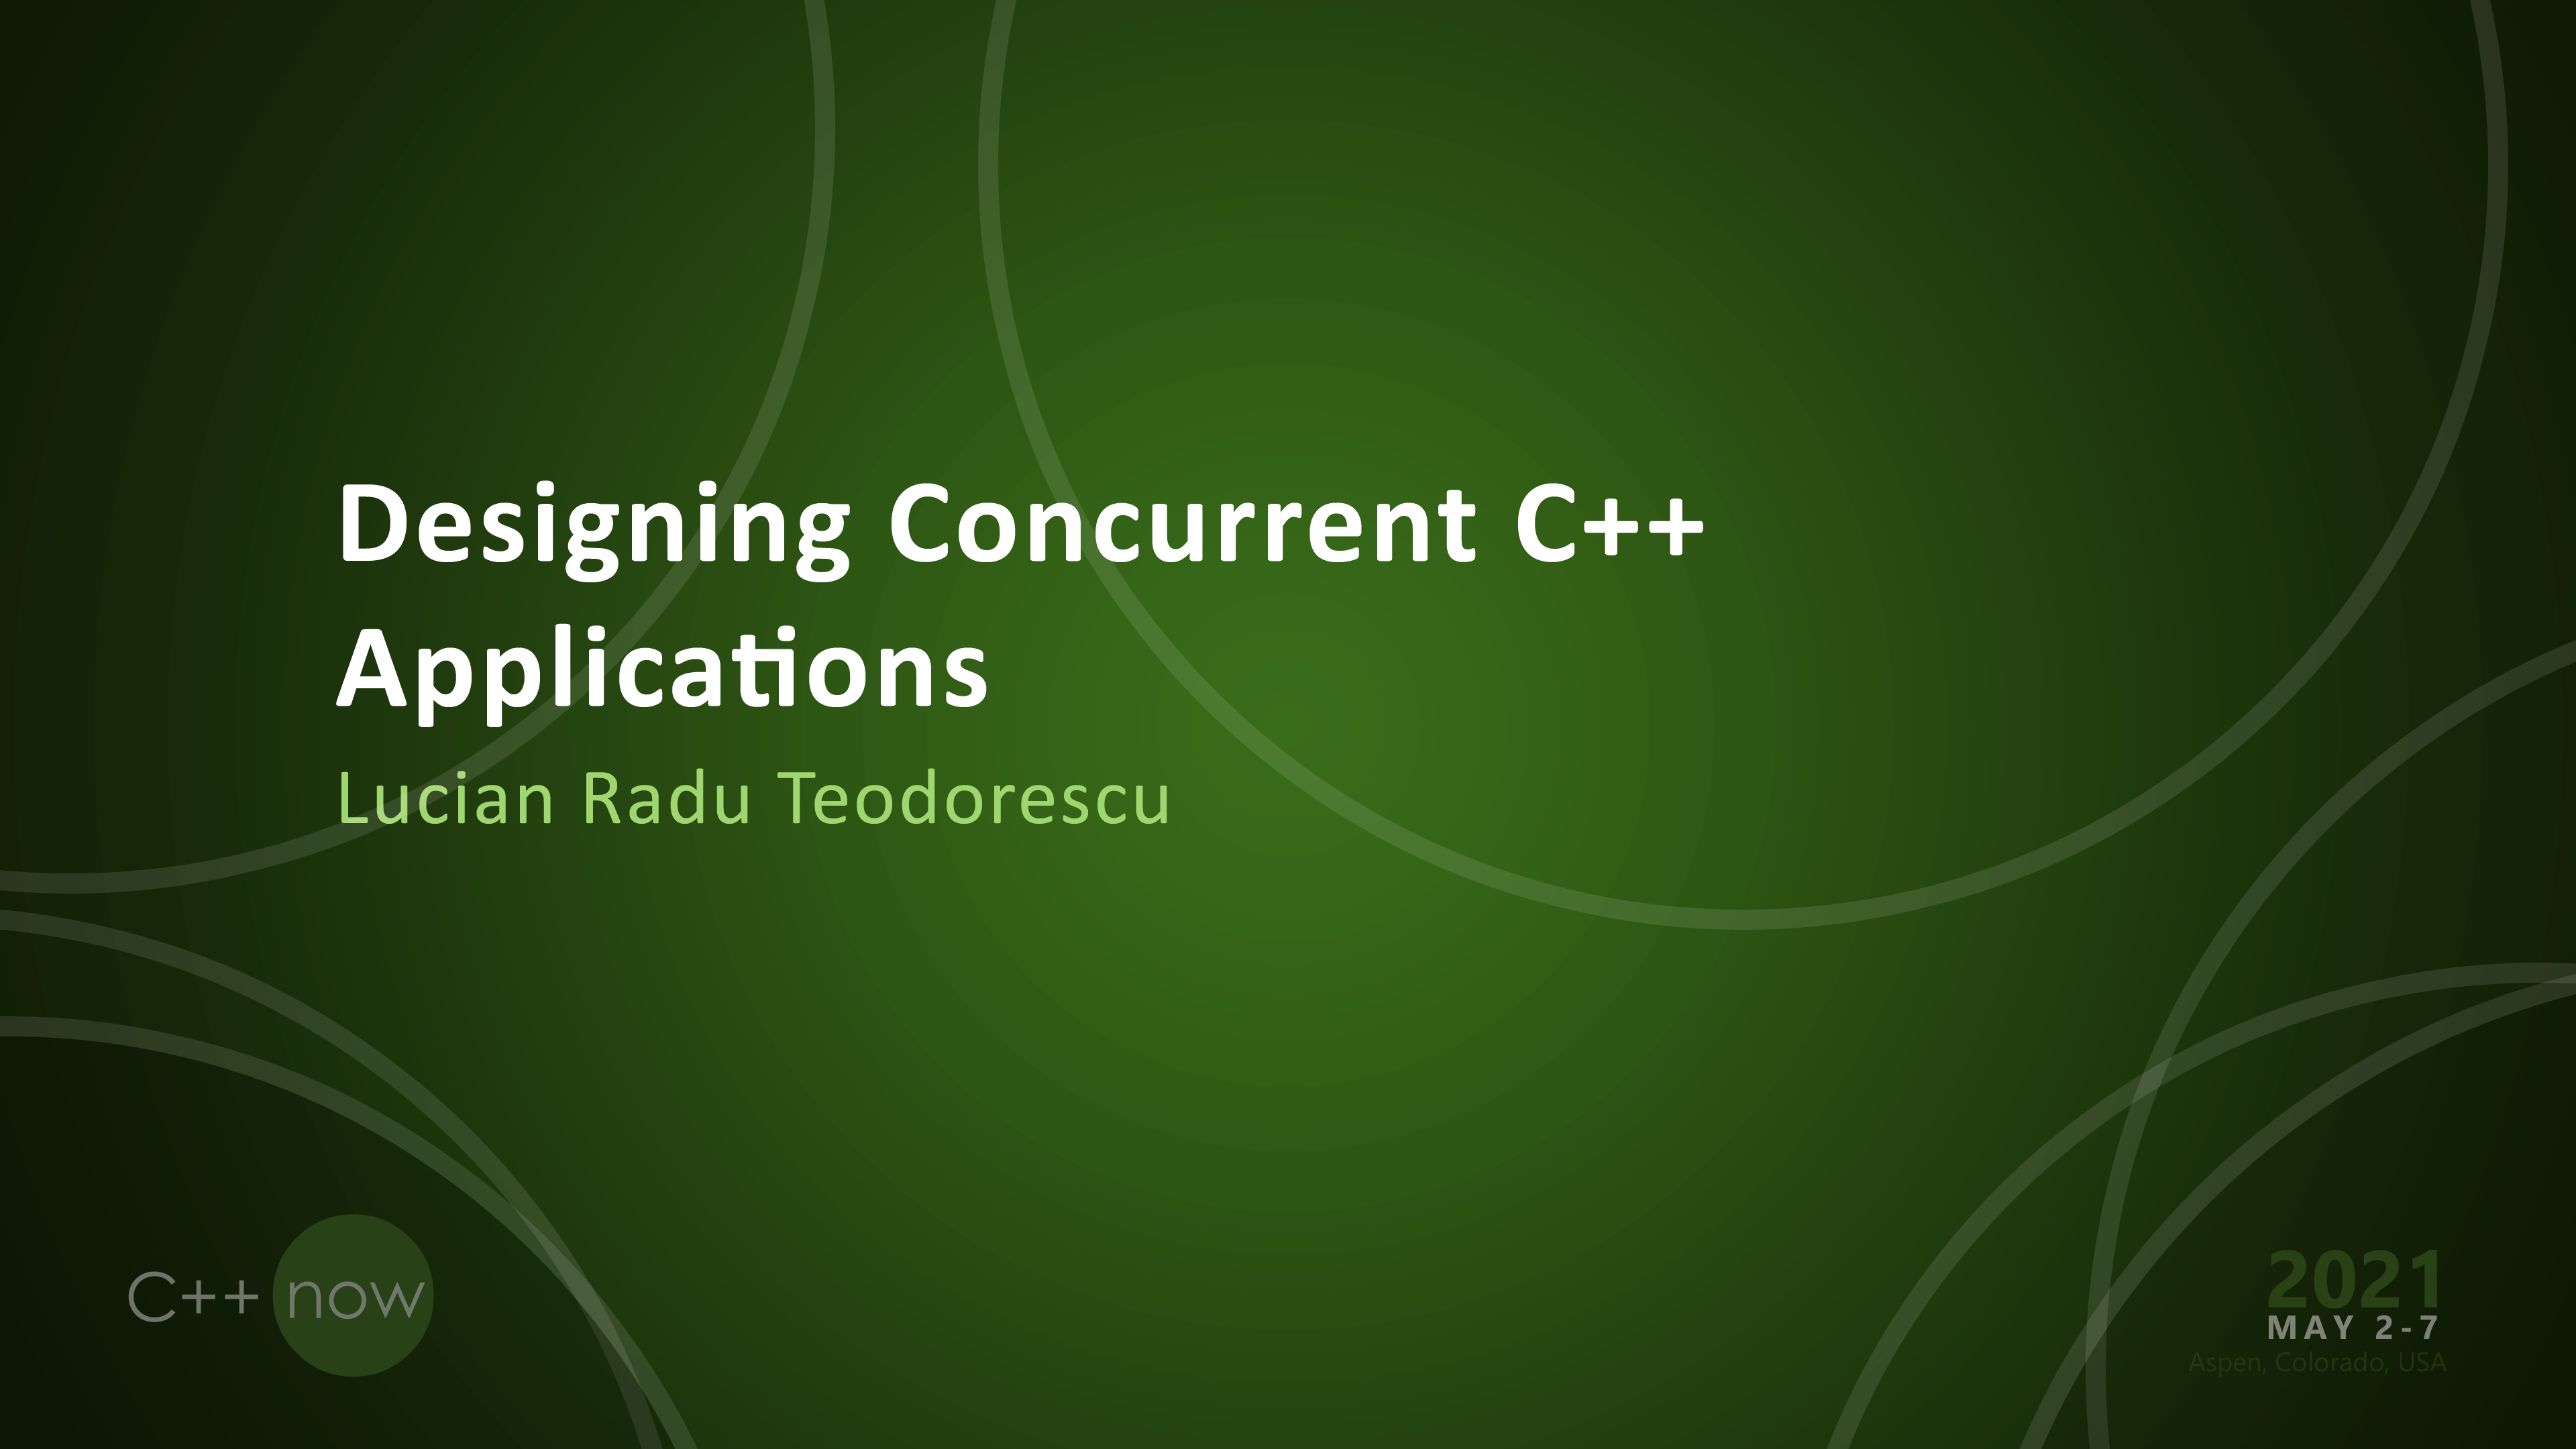 Designing Concurrent C++ Applications